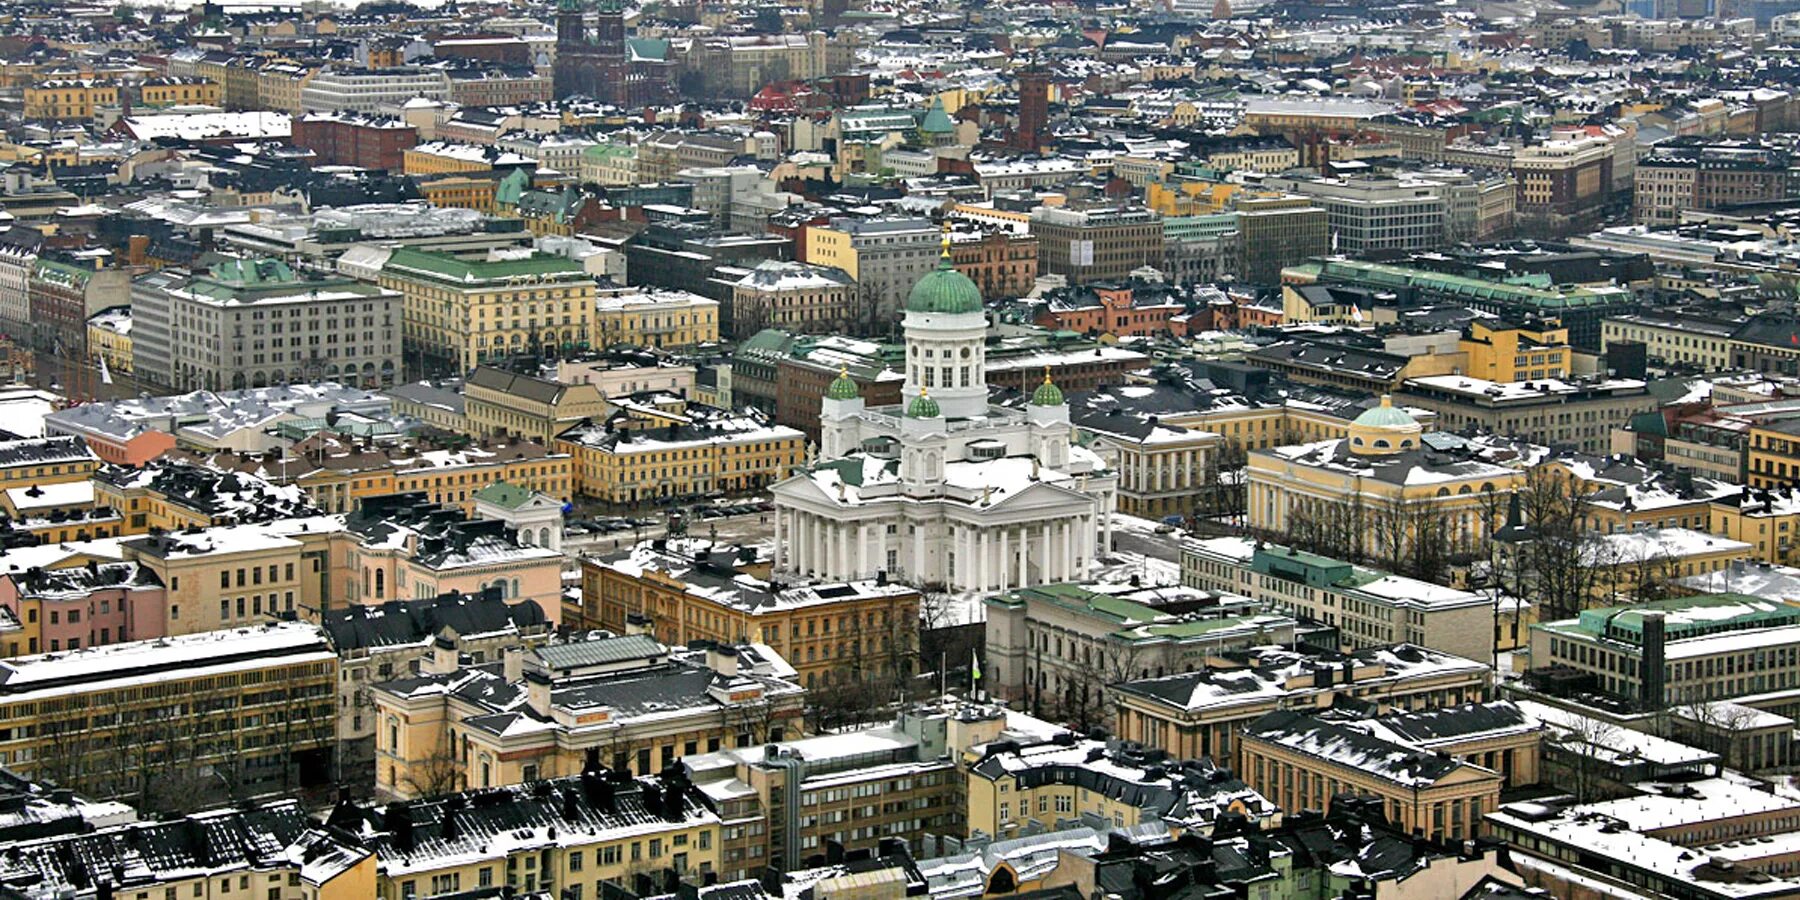 Финляндия столица какой страны. Финляндия Хельсинки. Хельсинки столица. Столица Финляндии город Хельсинки. Хельсинки столица Финляндии достопримечательности.